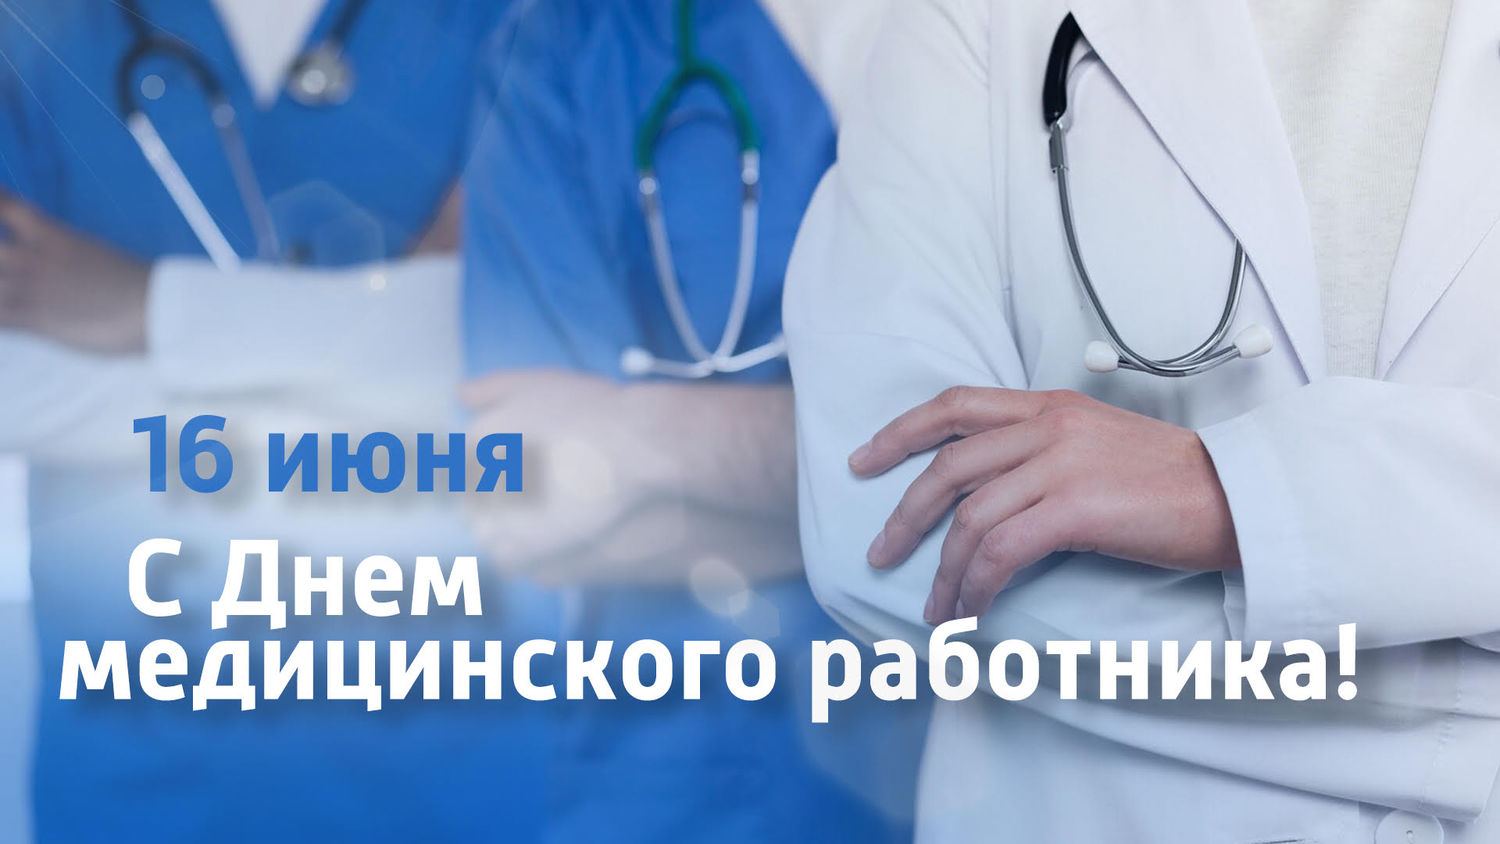 Путин поздравил медиков с Днем медицинского работника